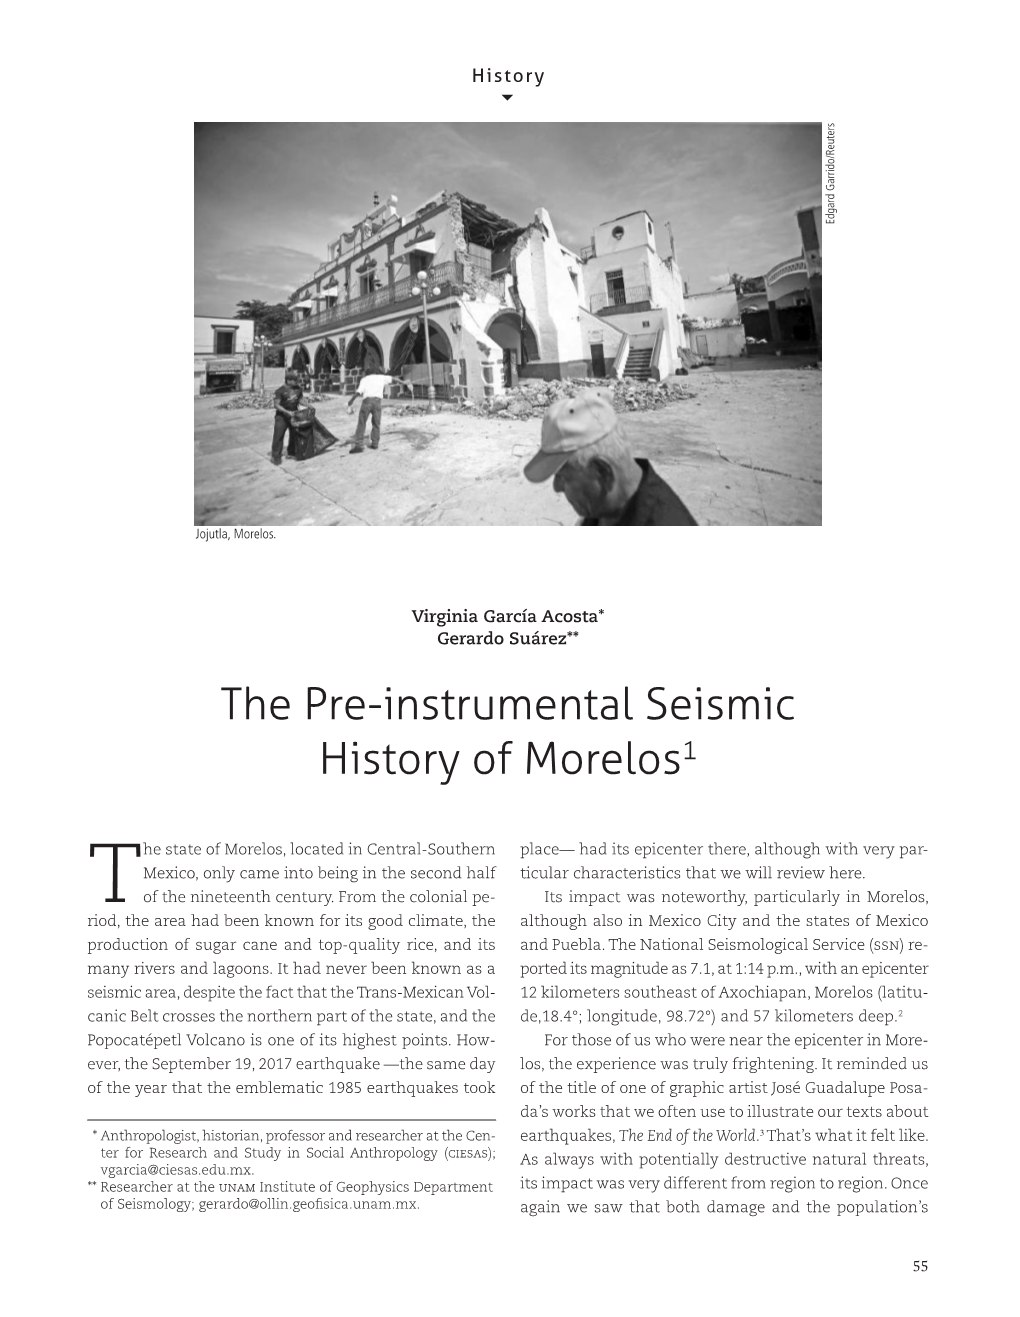 The Pre-Instrumental Seismic History of Morelos1